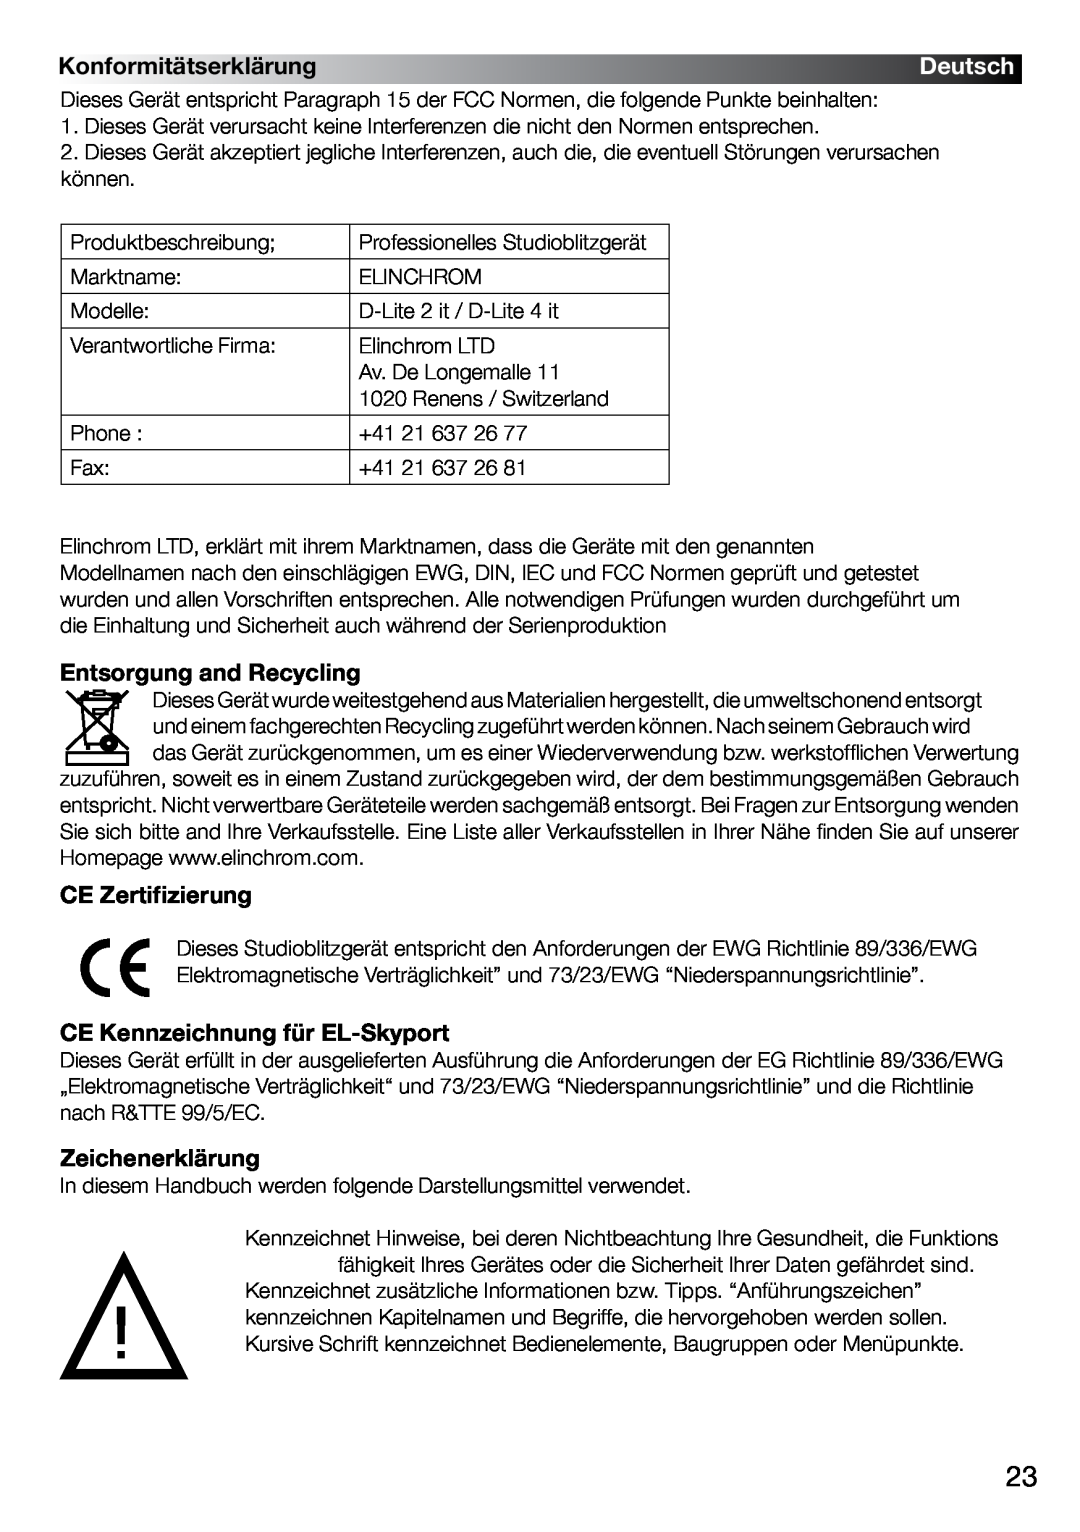 Elinchrom 2 IT, 4 IT Konformitätserklärung, Deutsch, Entsorgung and Recycling, CE Zertifizierung, Zeichenerklärung 